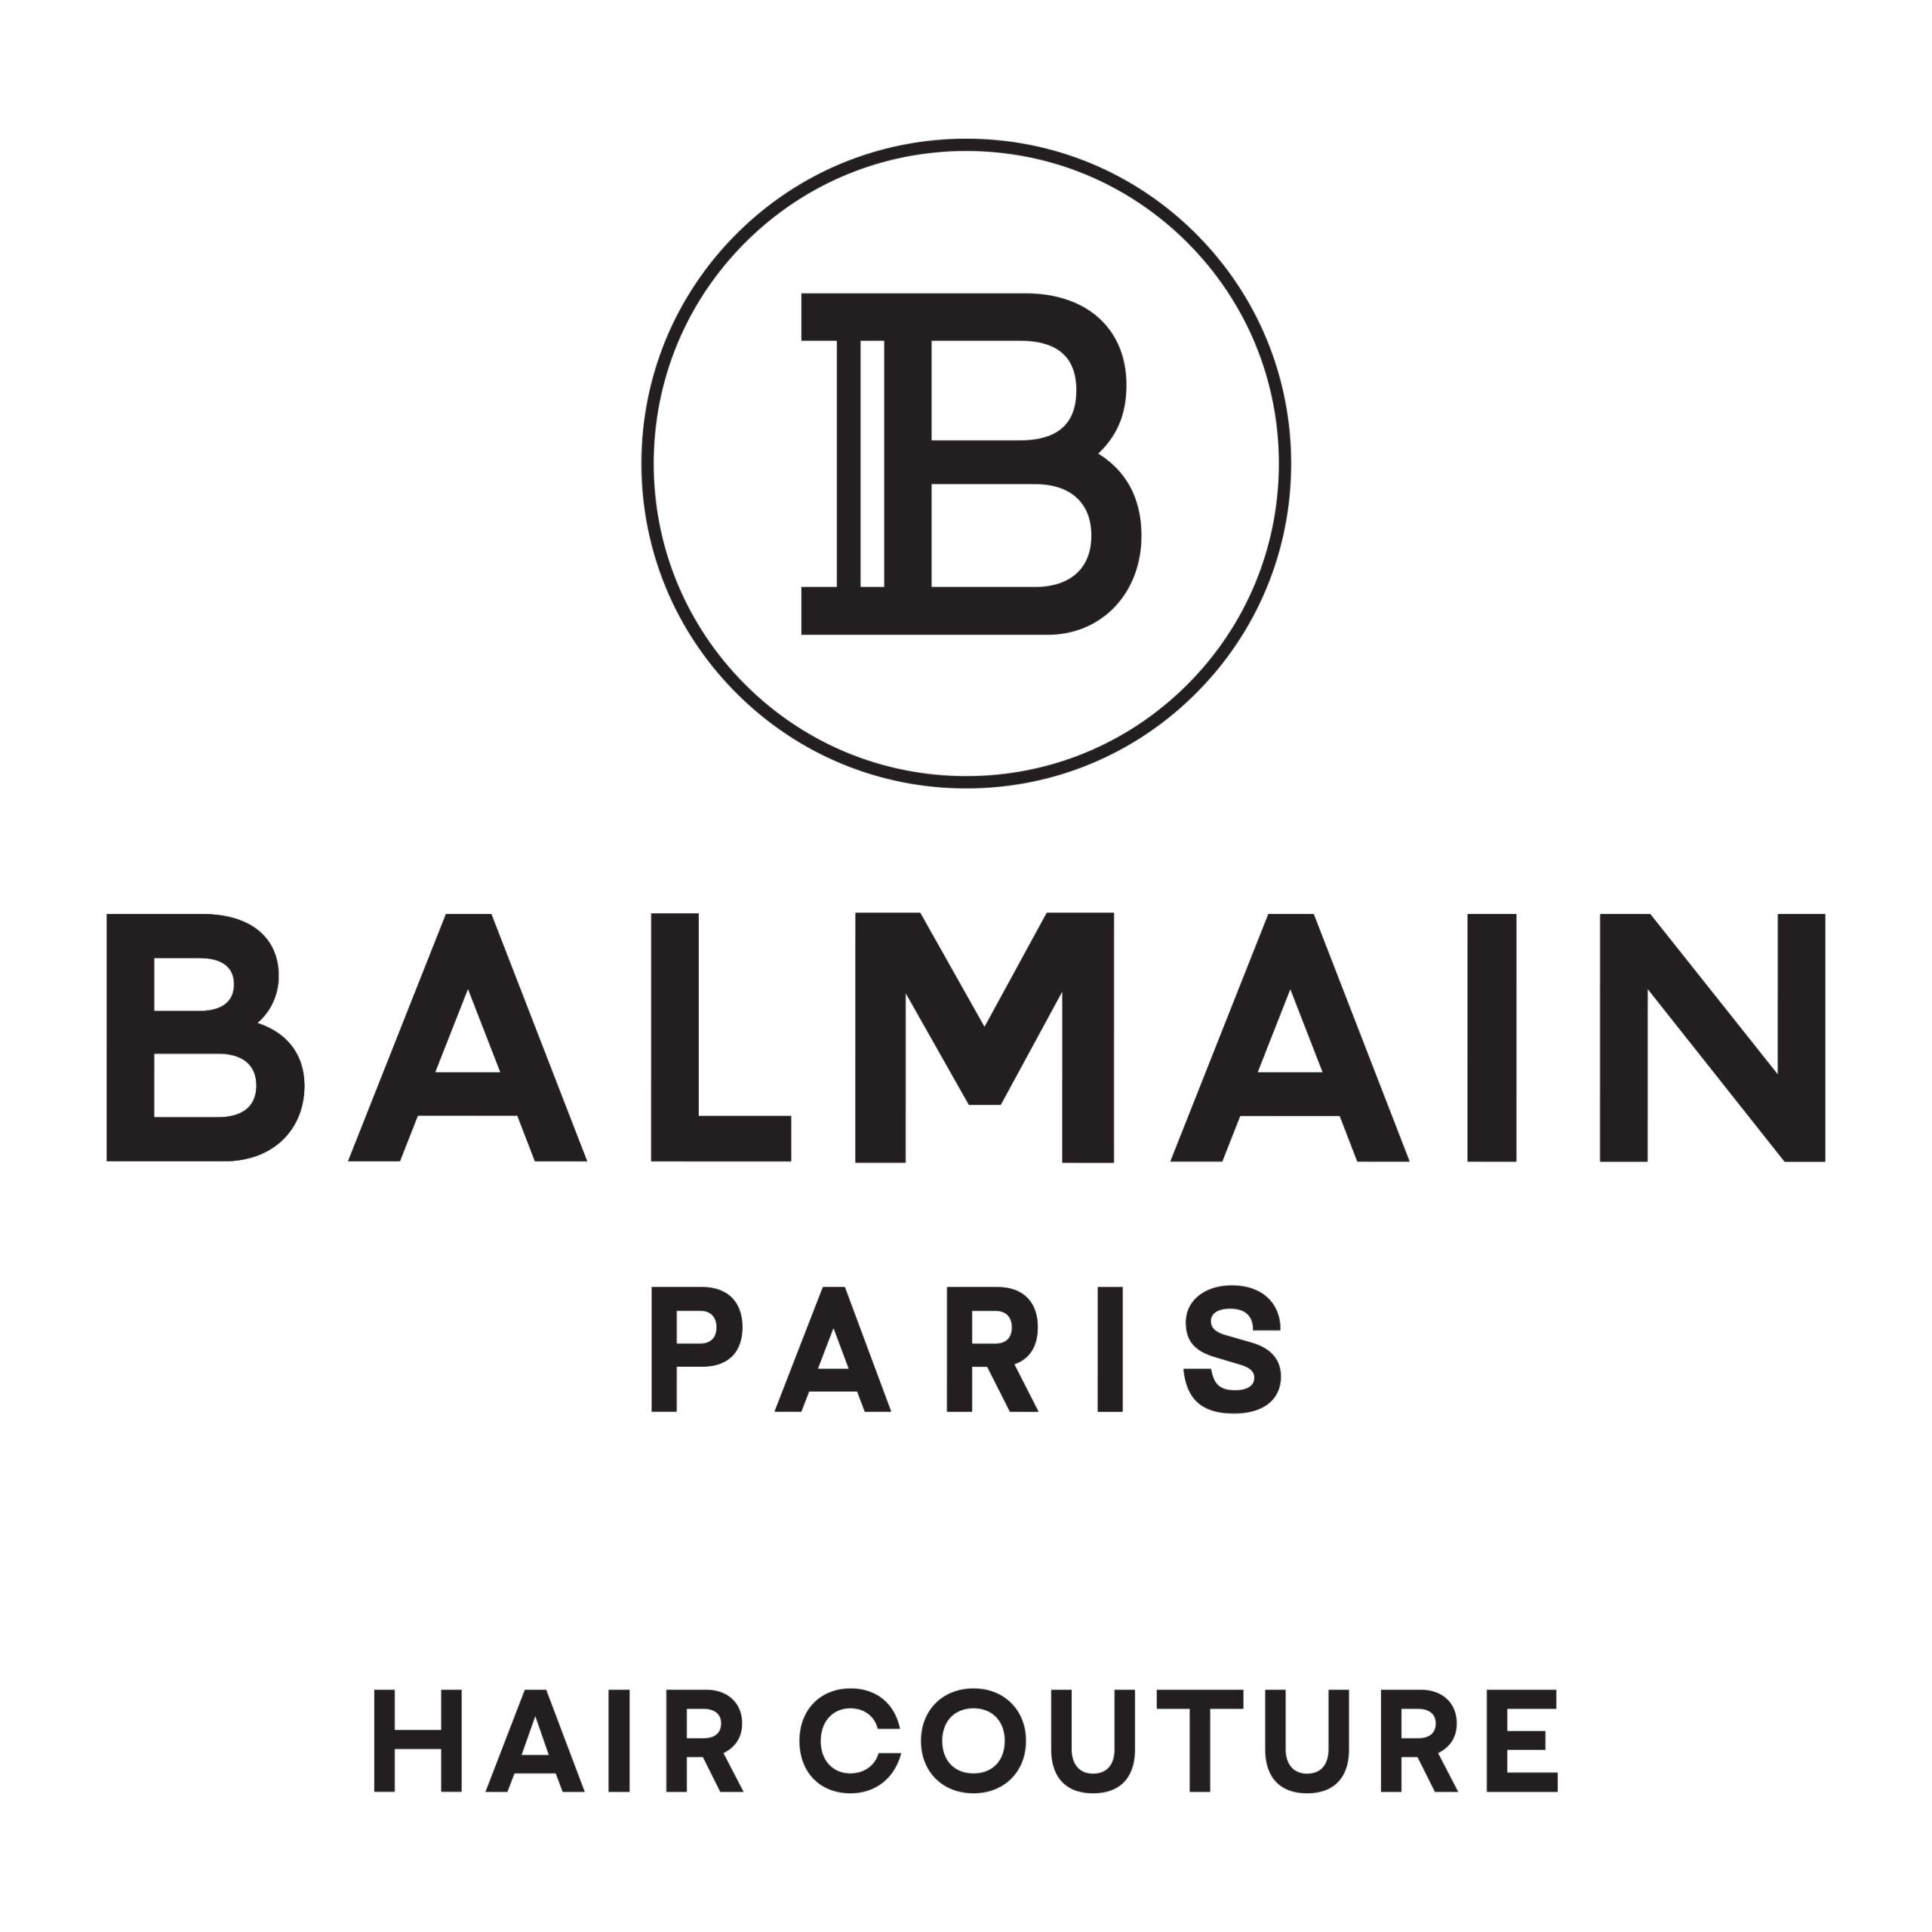 BalmainHair_LOGO_B_BalmainParis_HairCouture